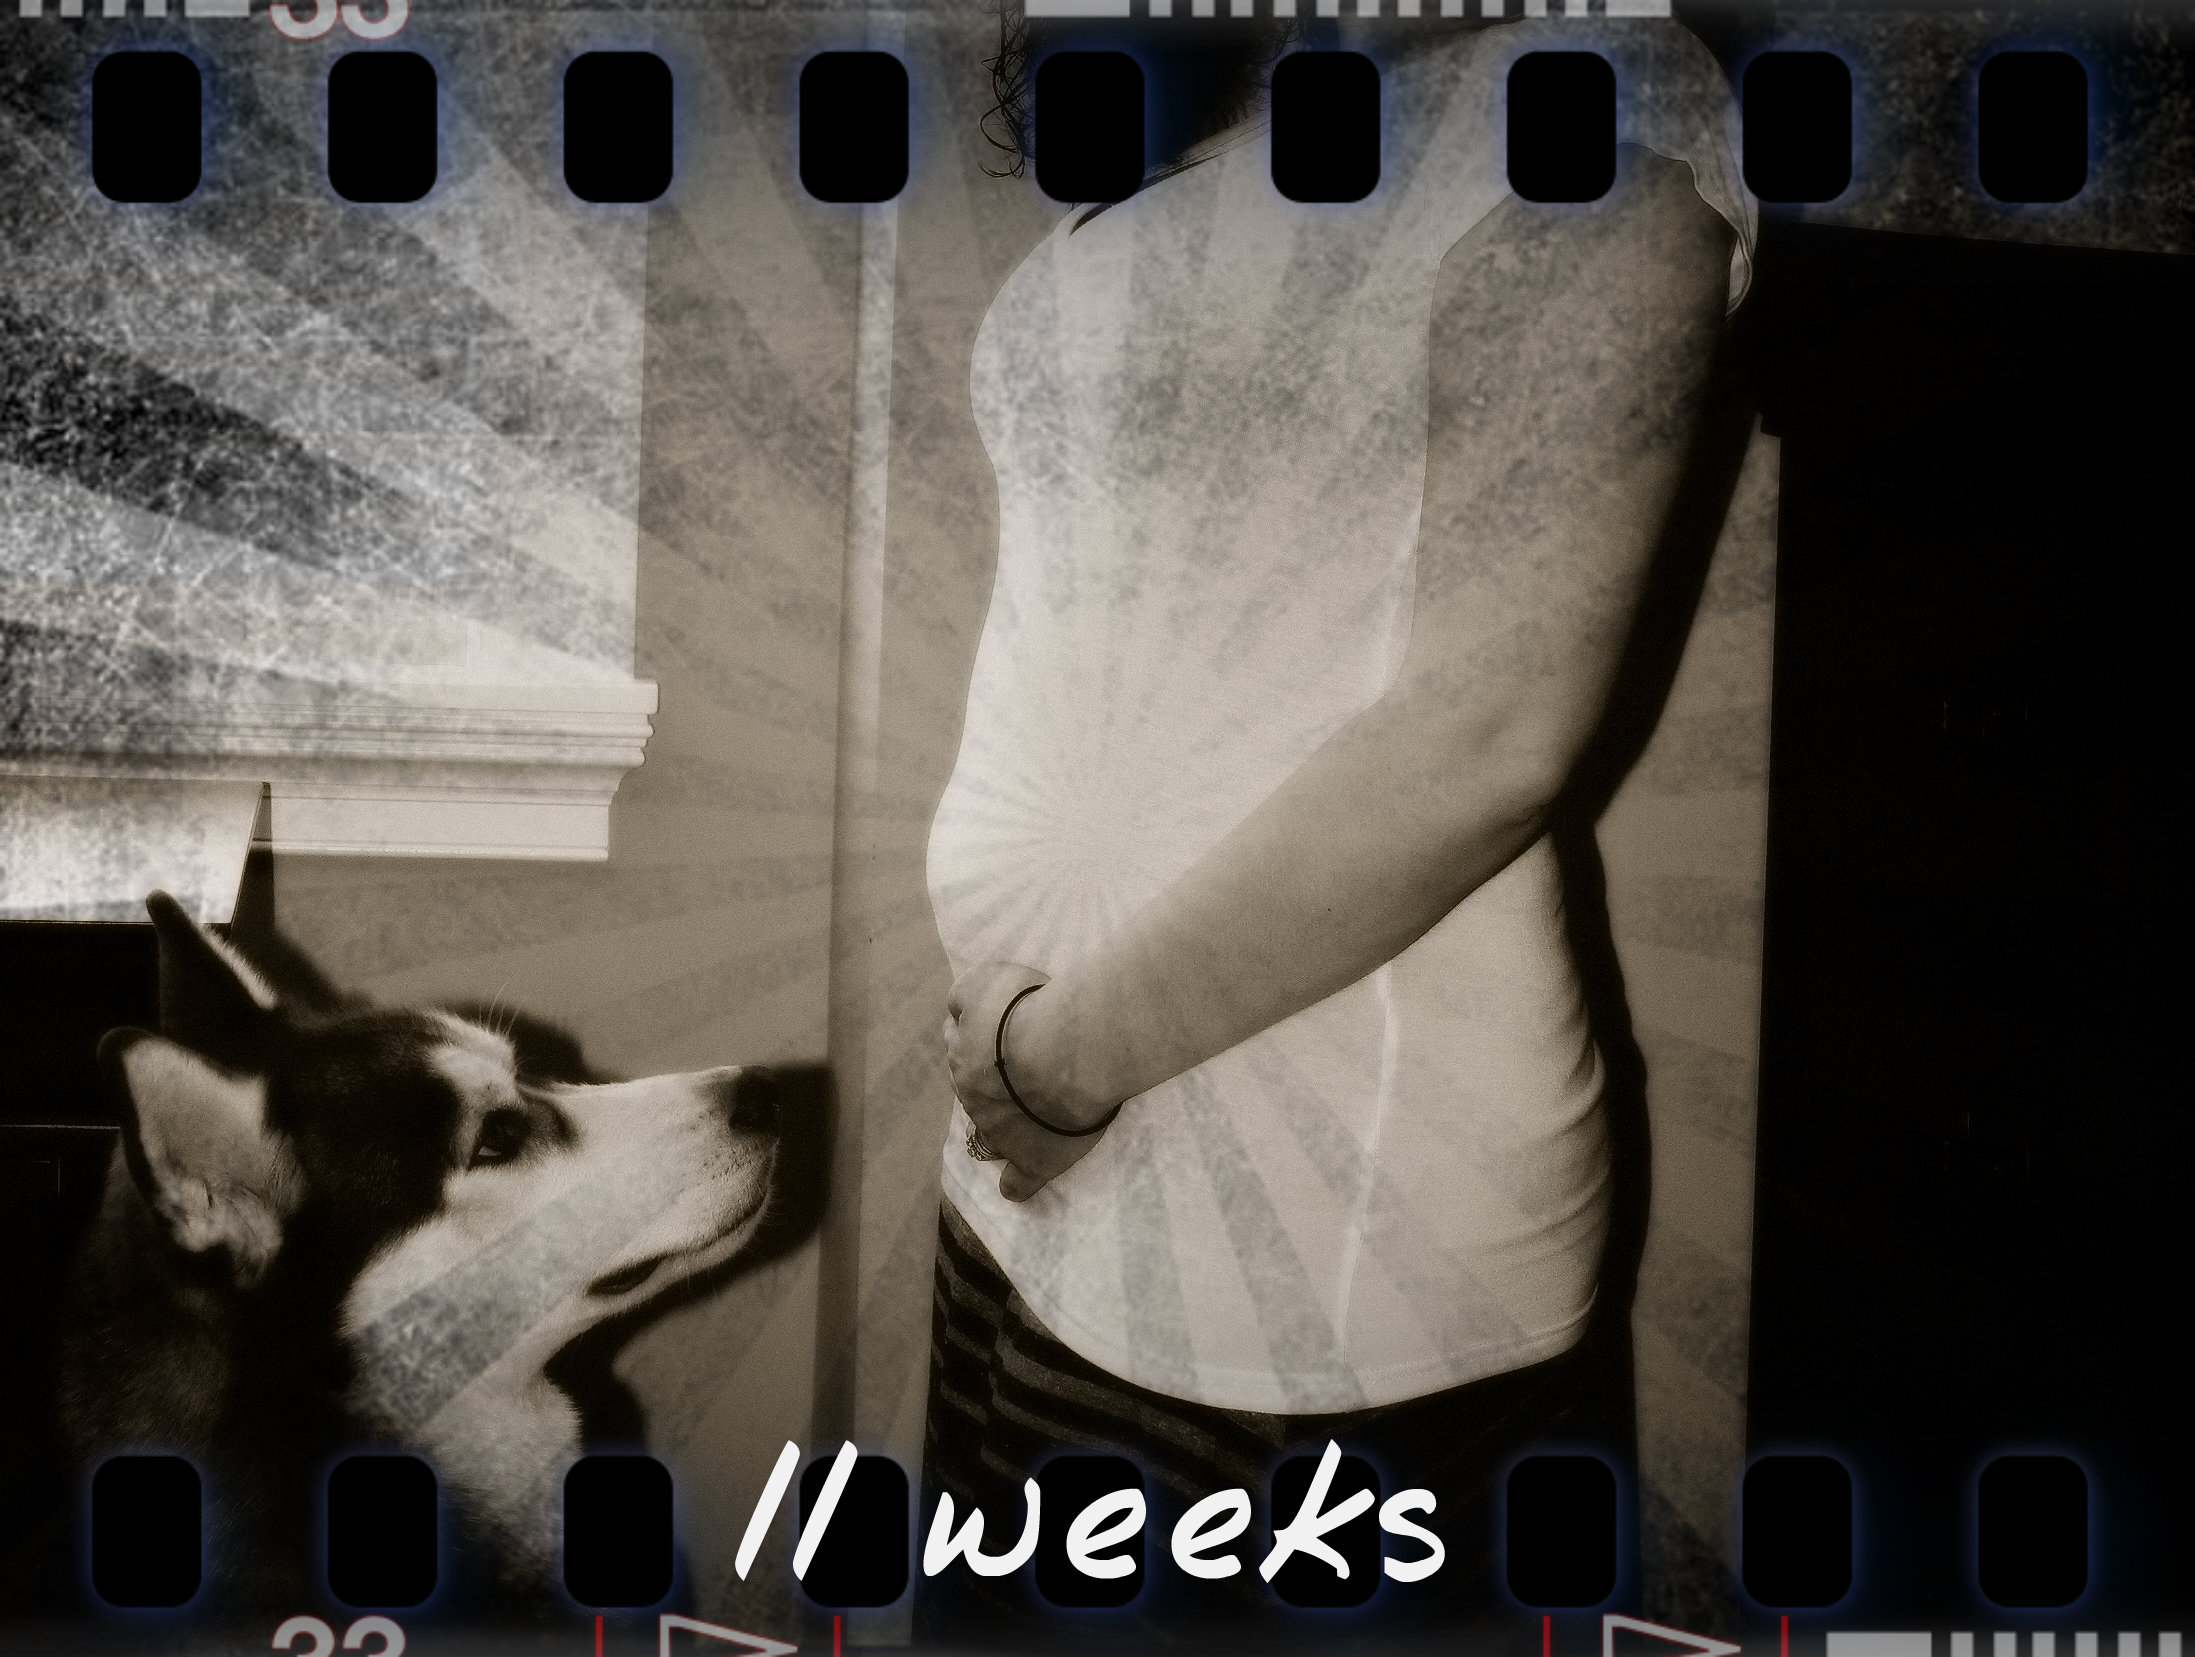 11 weeks